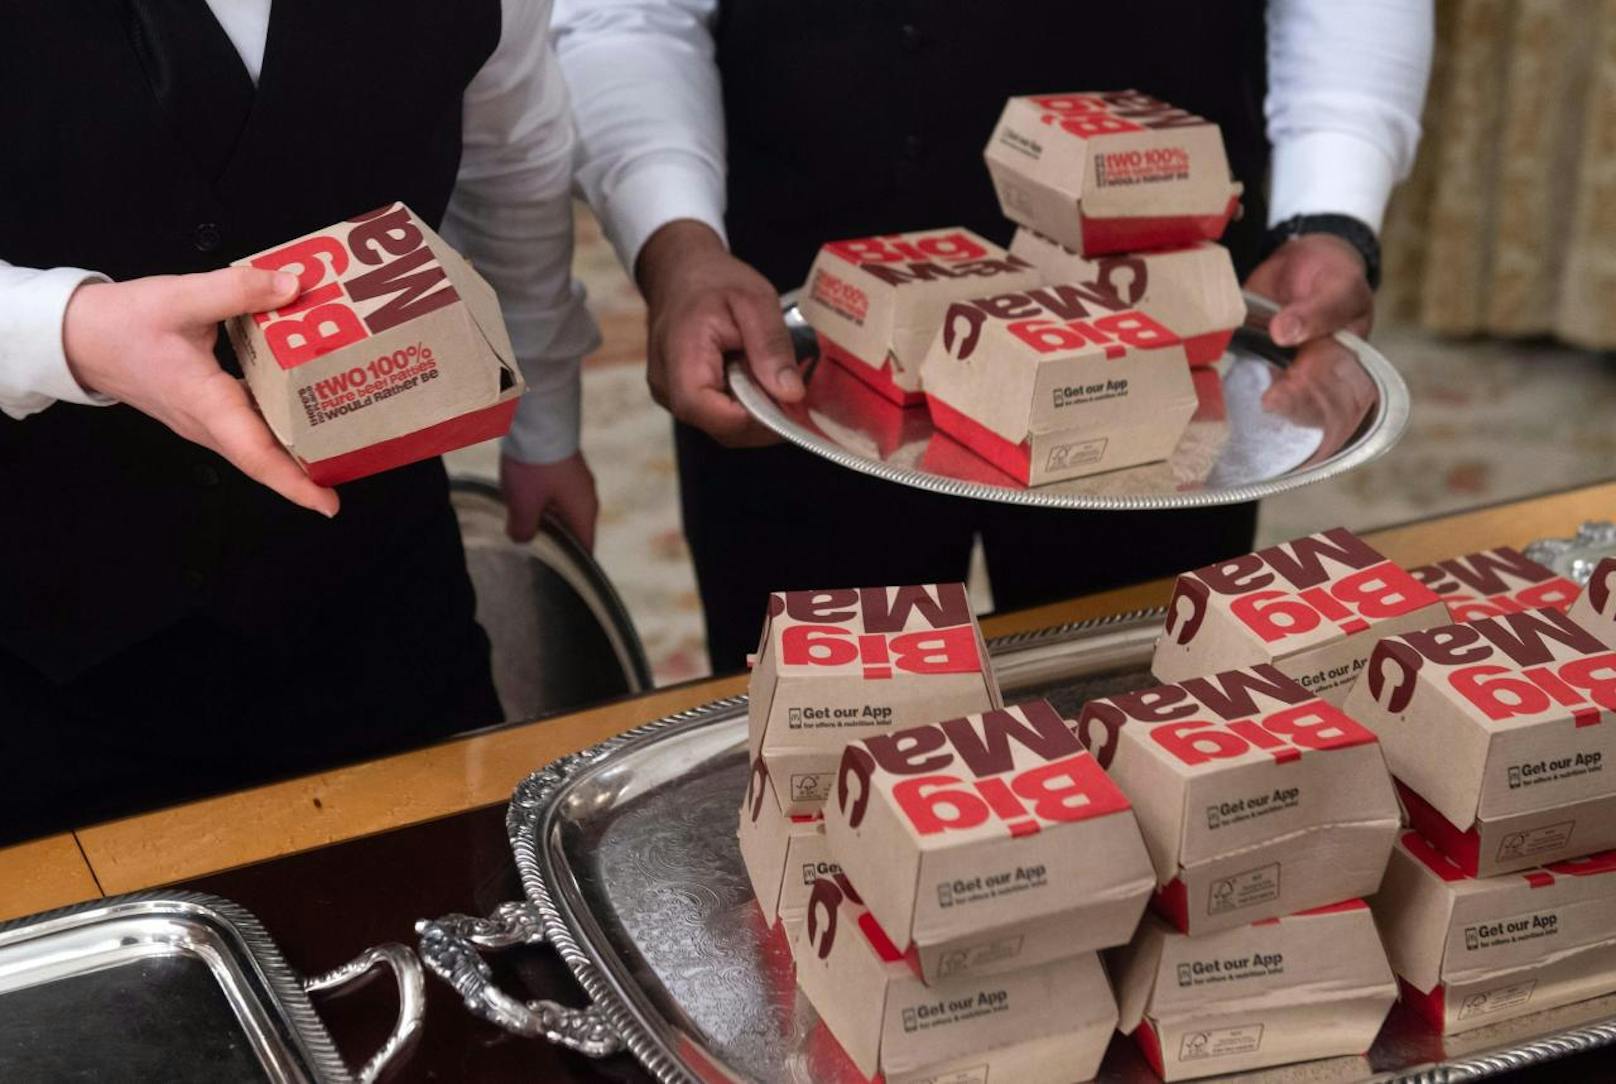 US-Präsident Donald Trump empfing die College-Football-Meistermannschaft Clemson Tigers im Weißen Haus. Weil die Köche aufgrund des Shutdown beurlaubt sind, ließ der Präsident auf eigene Rechnung Fast Food liefern und auftischen.